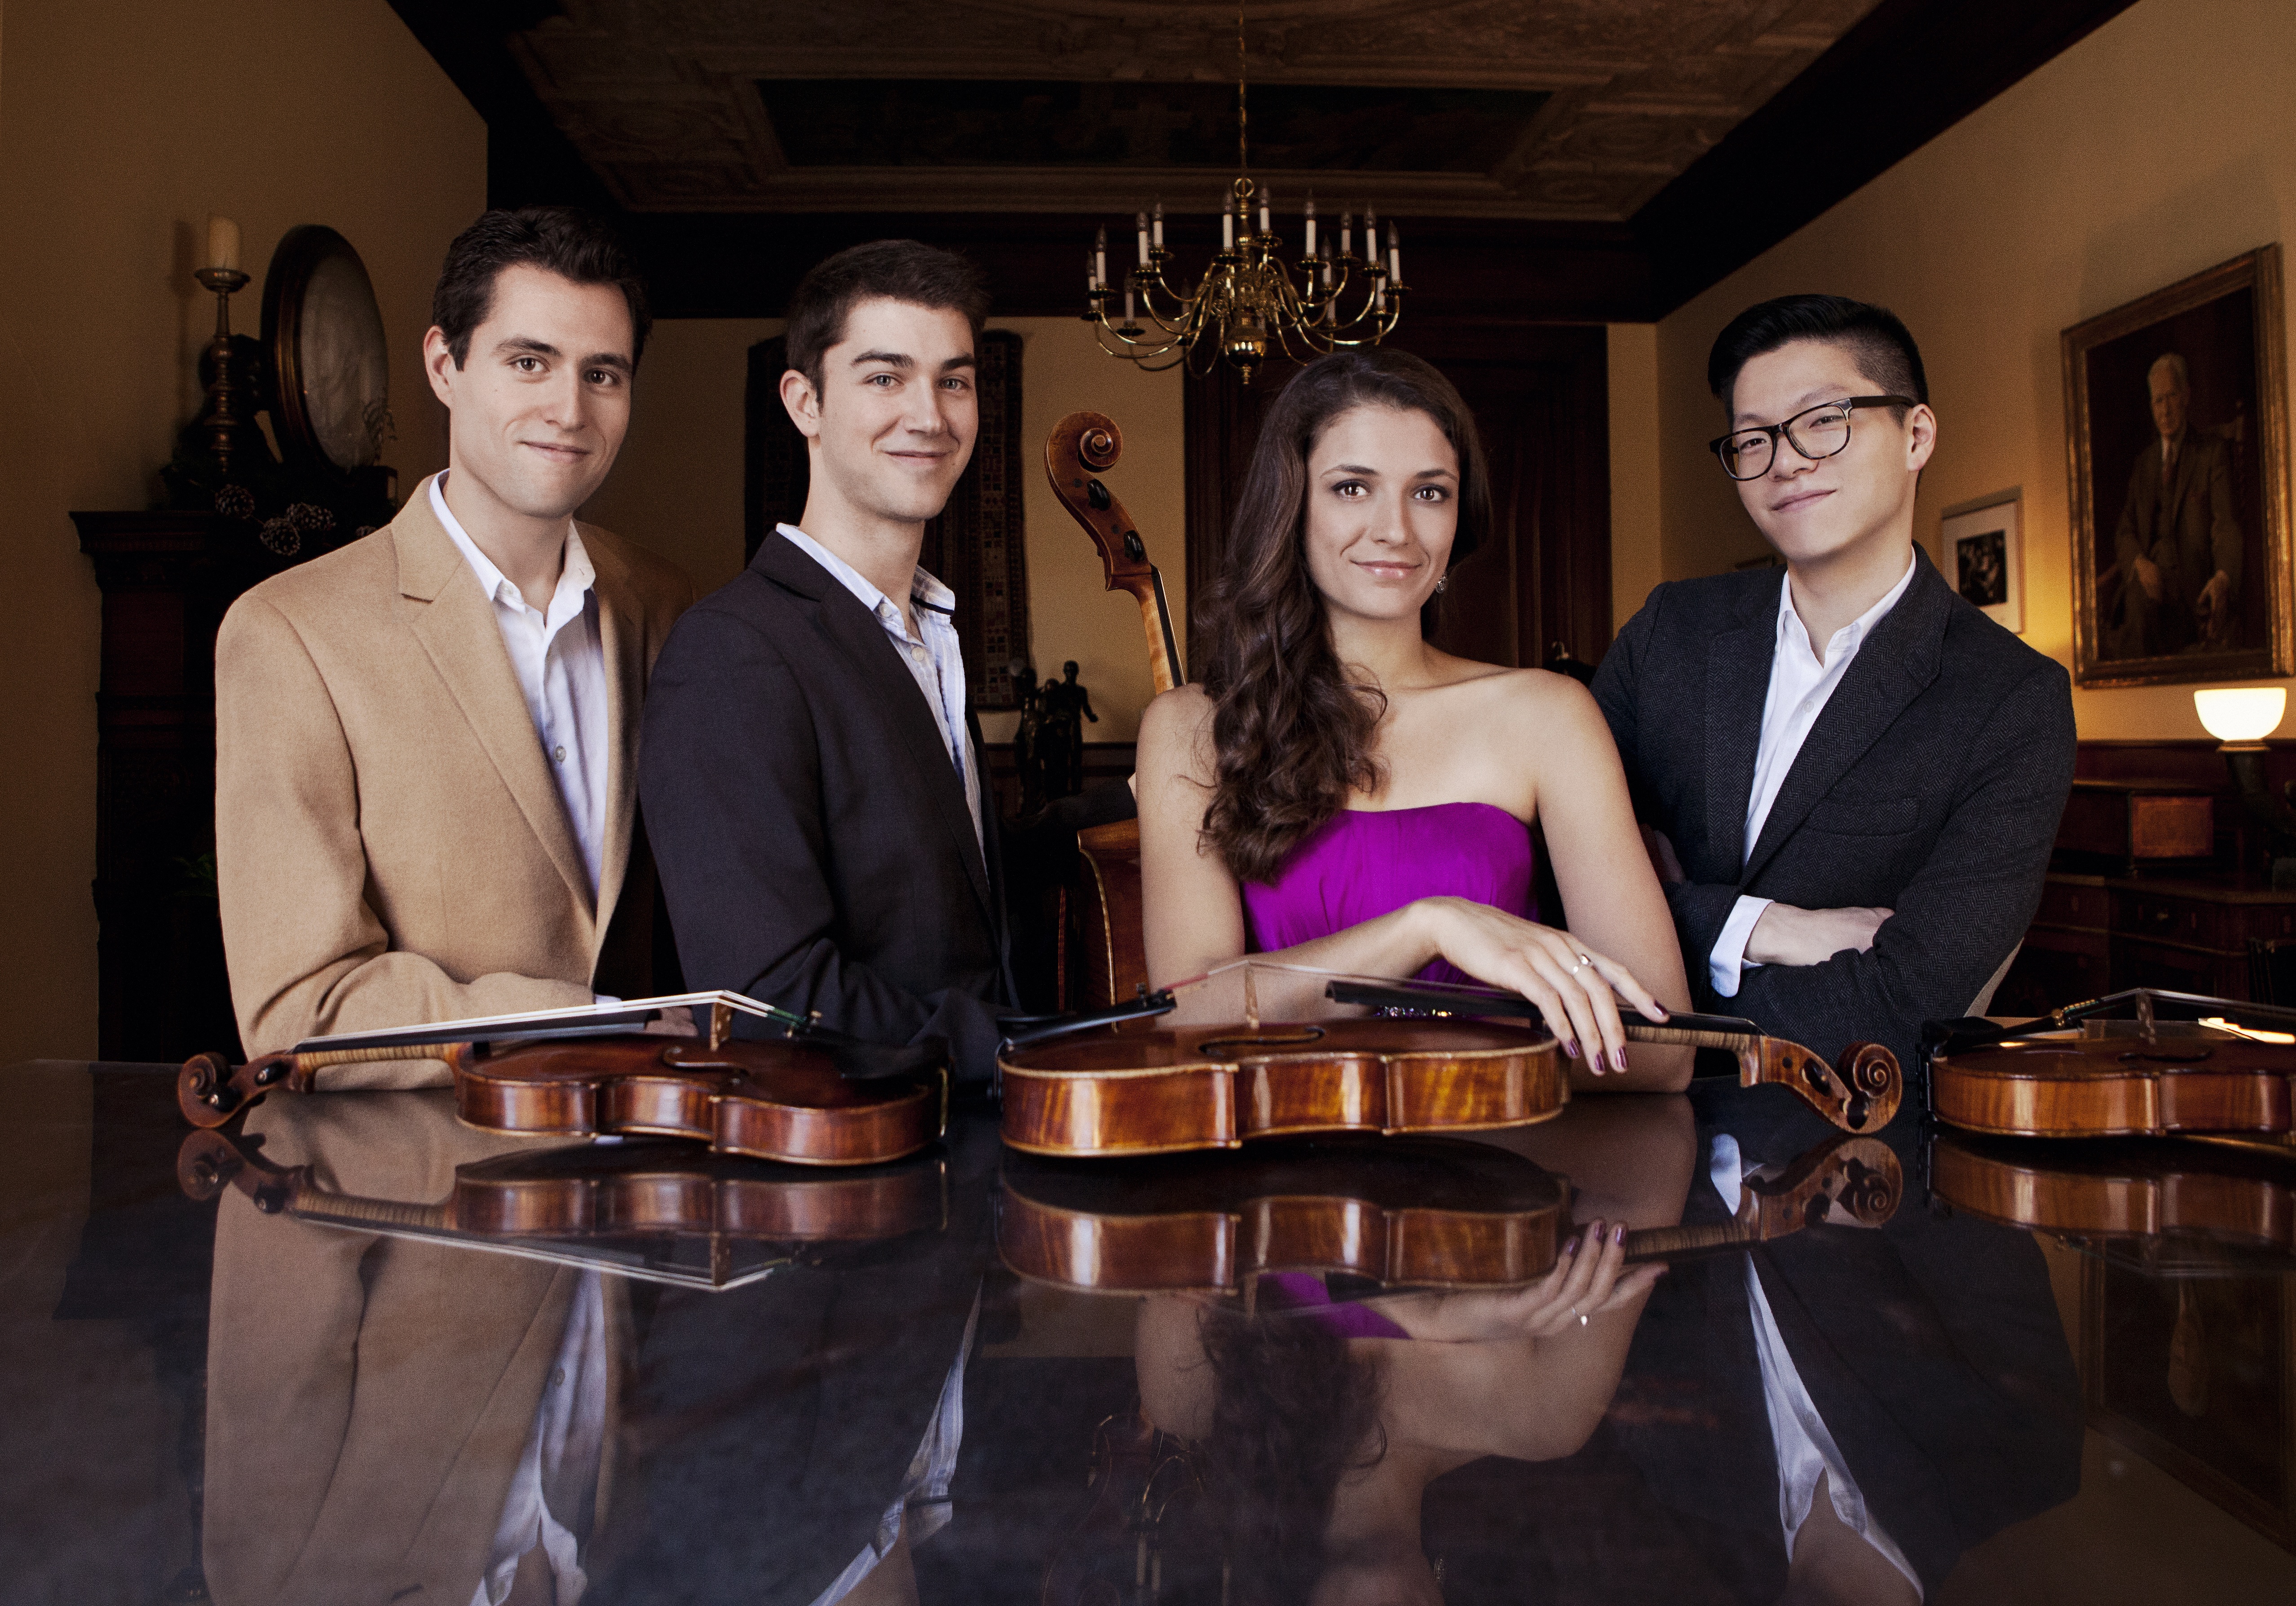 The Dover Quartet consists of Joel Link and Bryan Lee, violin; Milena Pajaro-Van de Stadt, viola; and Camden Shaw, cello.